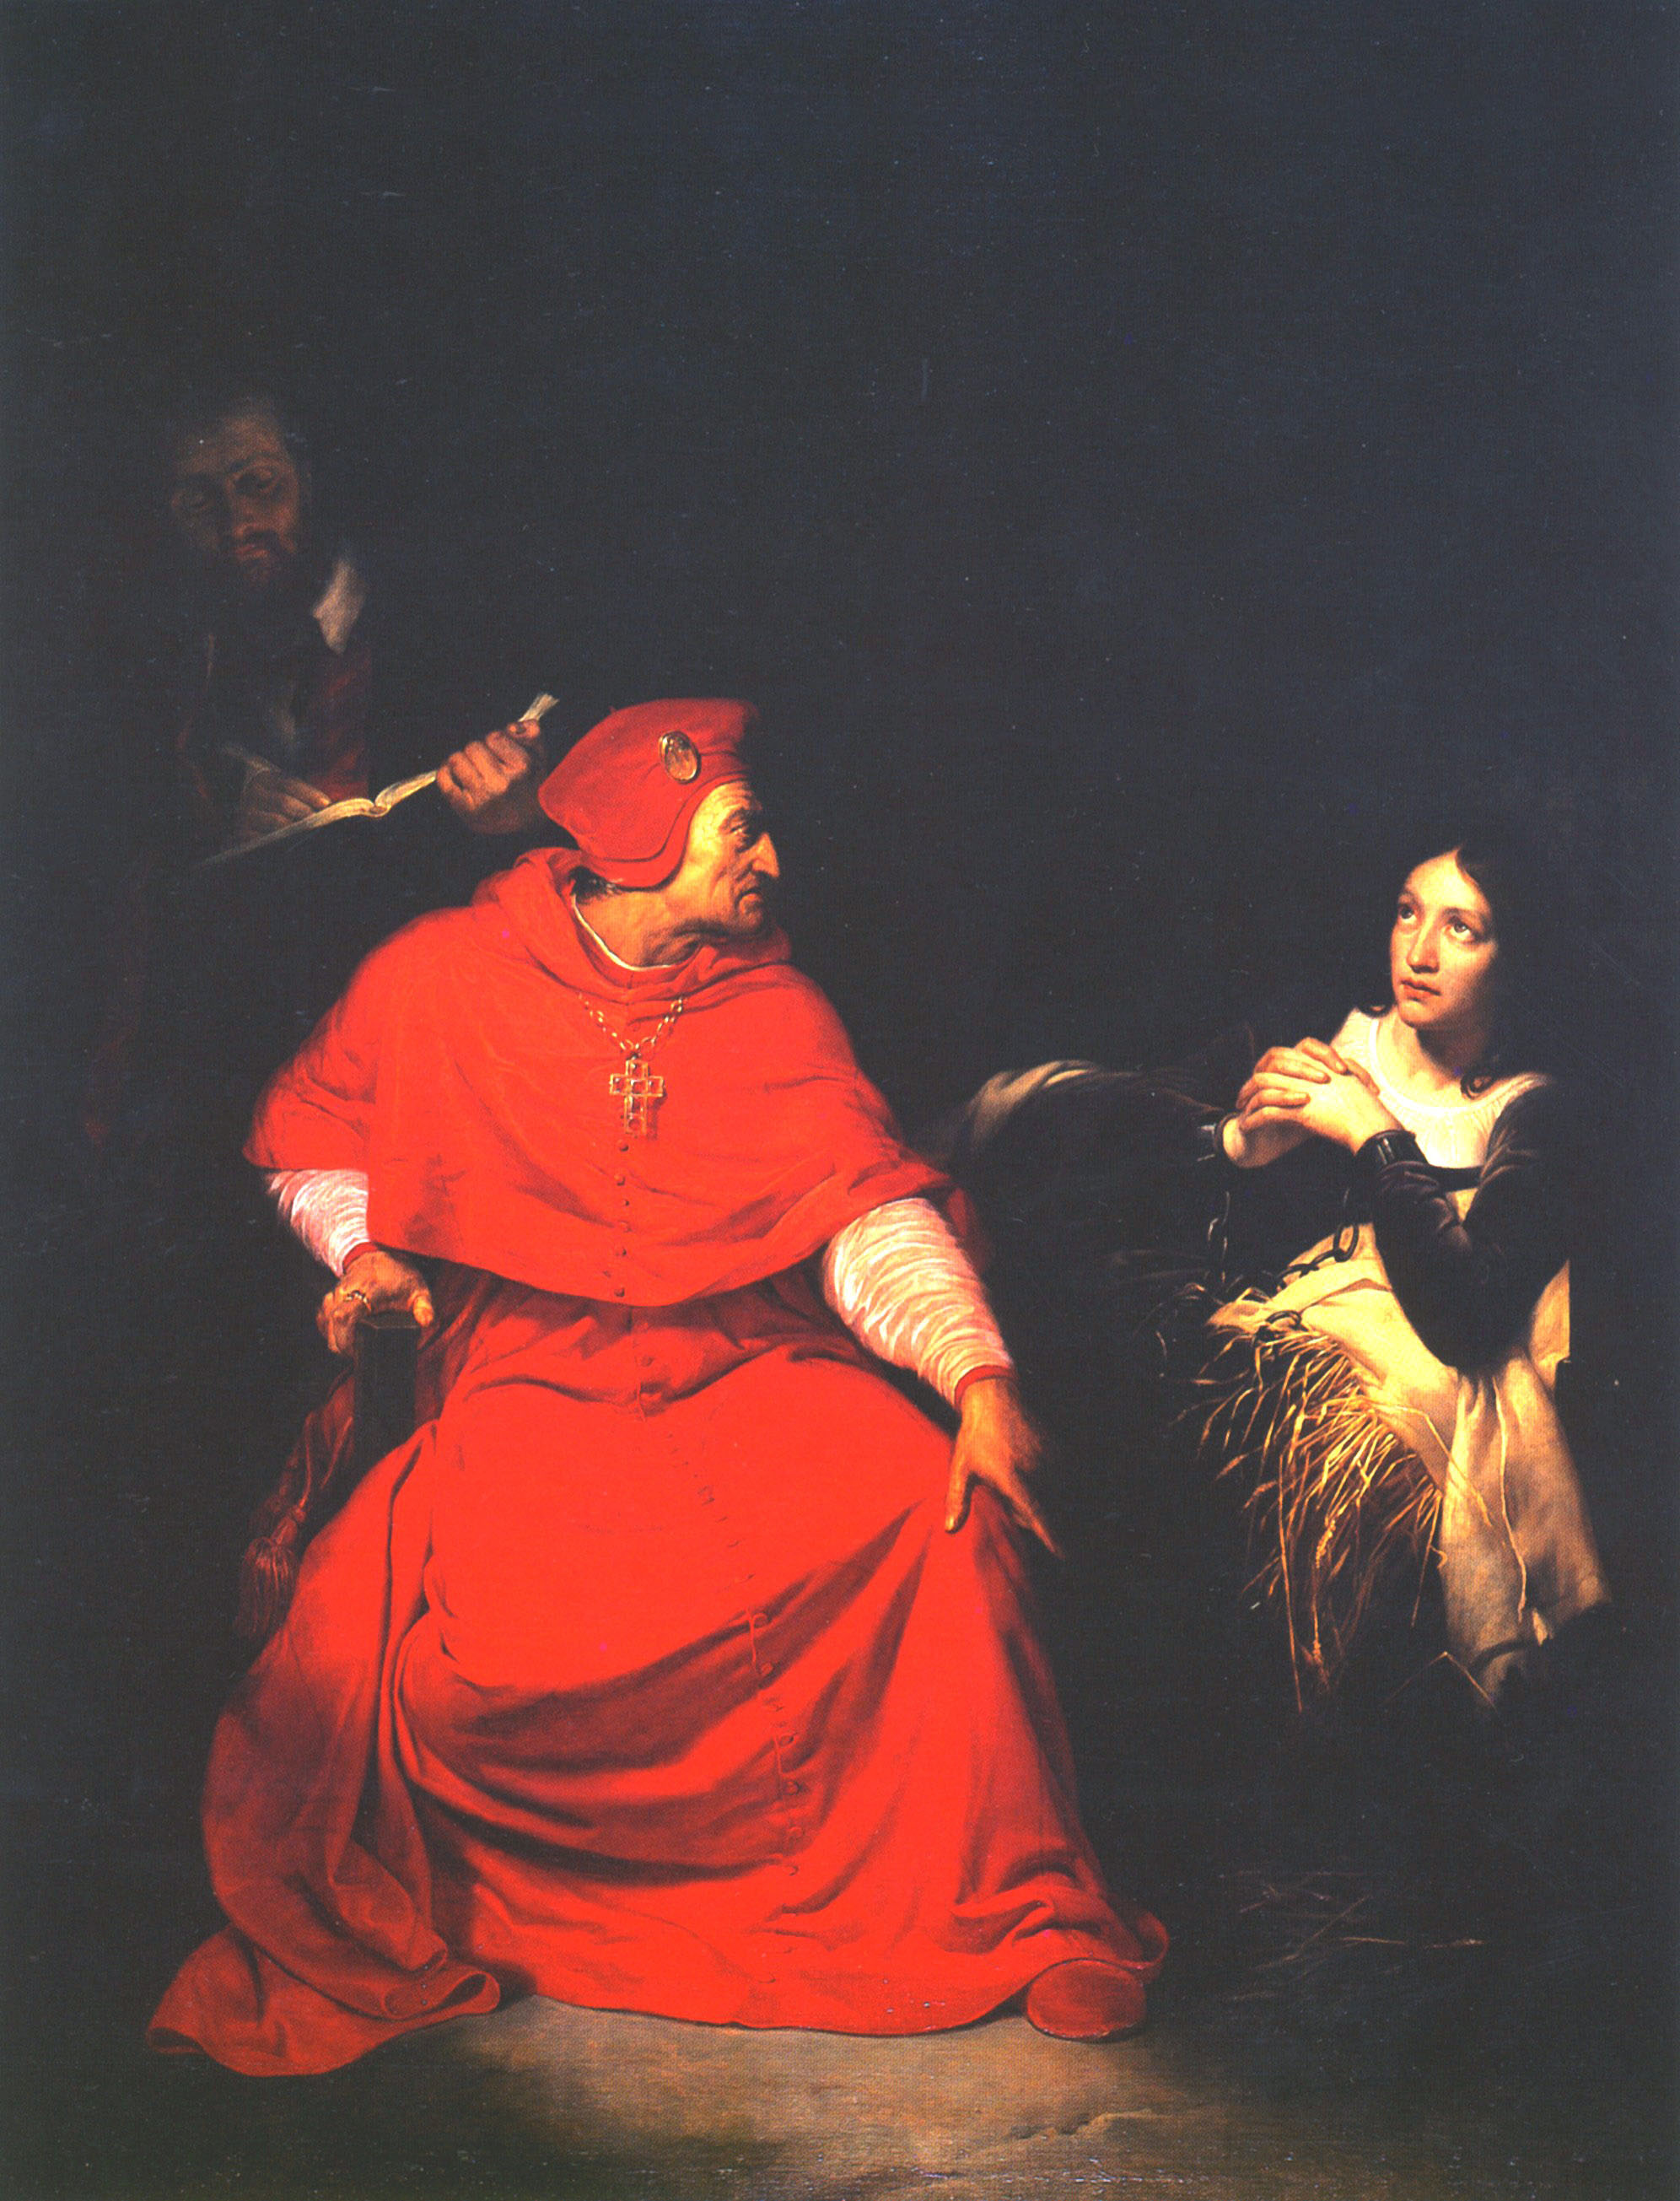 Поль Деларош. "Допрос Жанны кардиналом Винчестера". 1824.